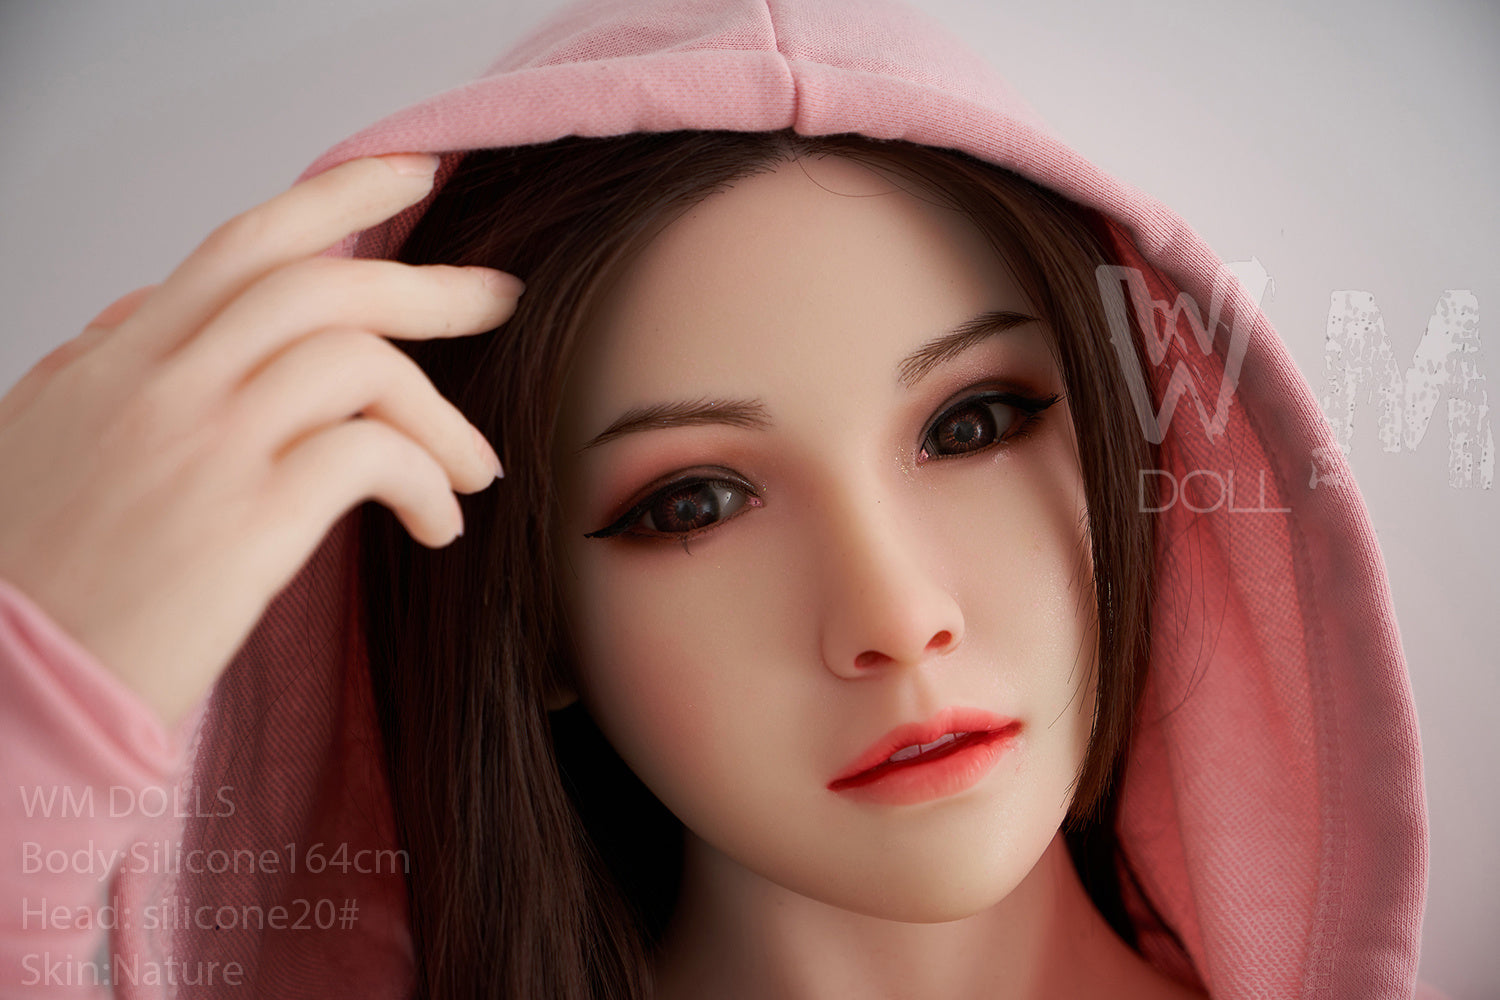 WM Doll 164 cm D Silicone - Maeve | Sex Dolls SG